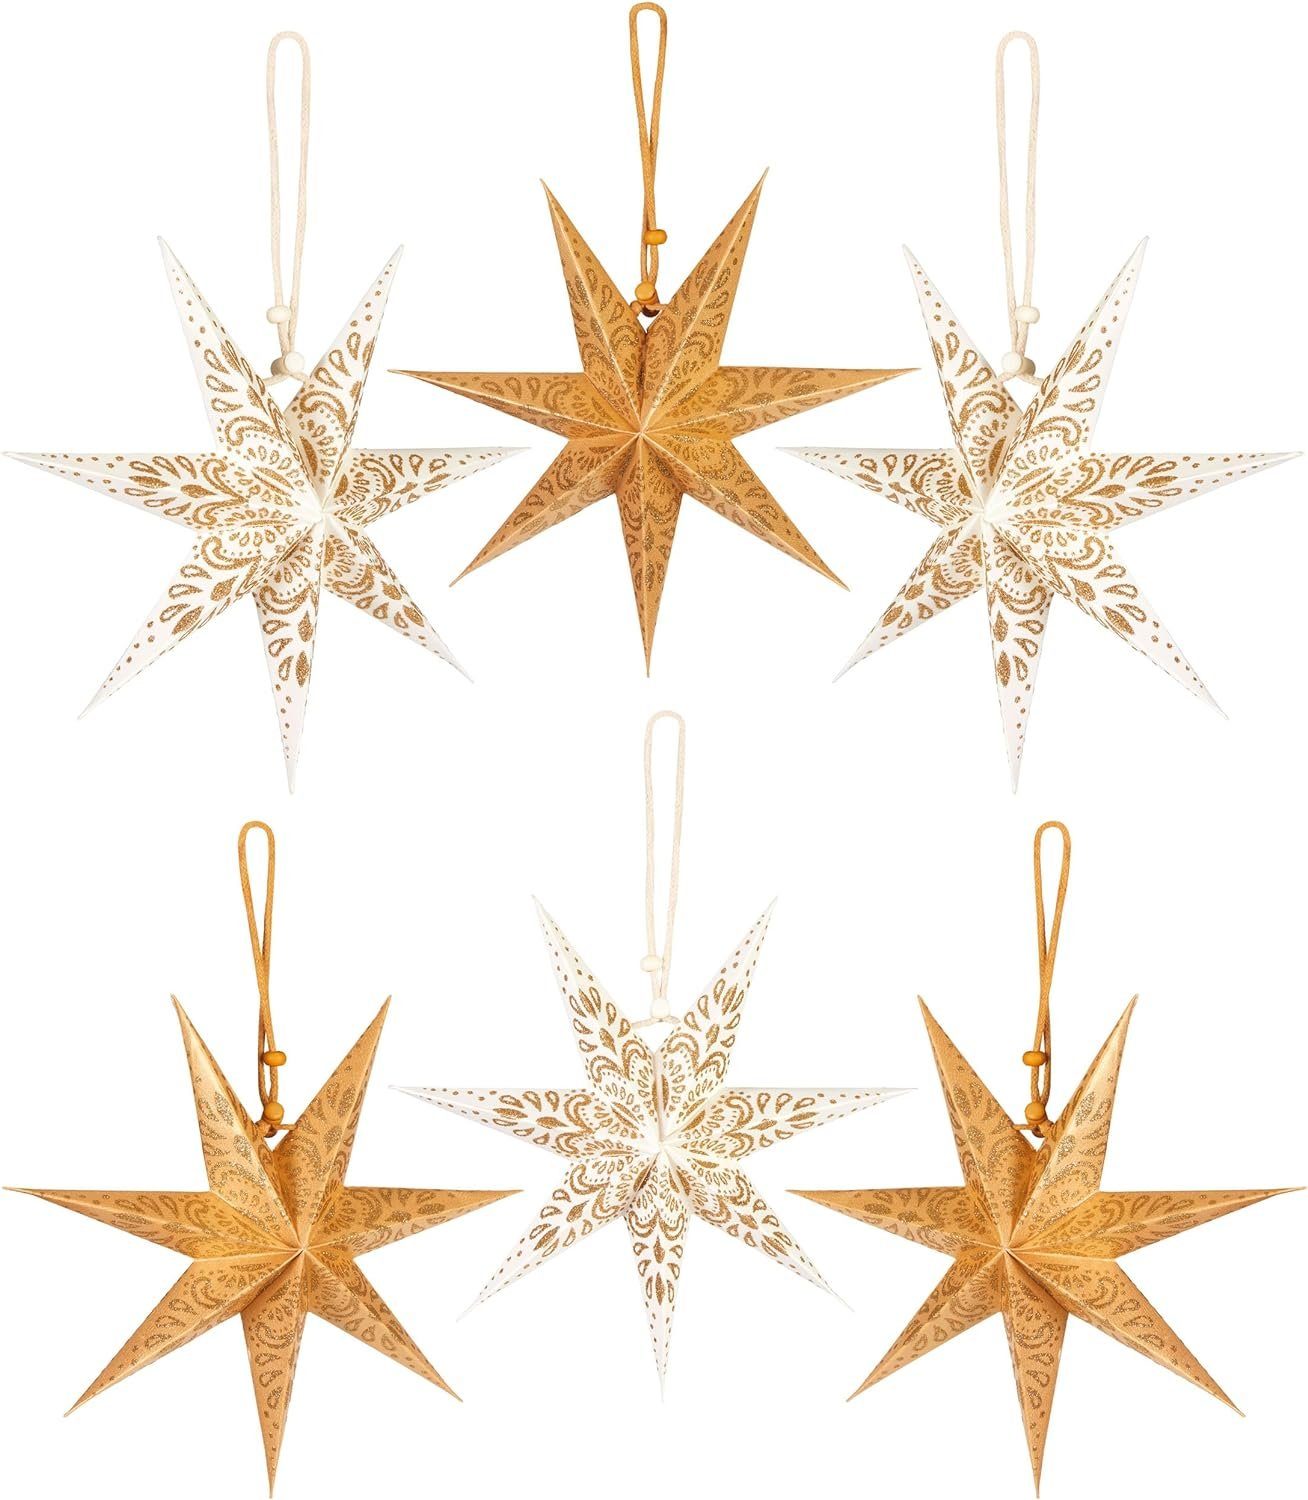 BRUBAKER Papiersterne 6 Weihnachtssterne - 20 cm Faltsterne Weihnachten - Papier Sterne, Großer Christbaumschmuck für Weihnachtsbaum und Fenster Dekoration Gold und Weiß